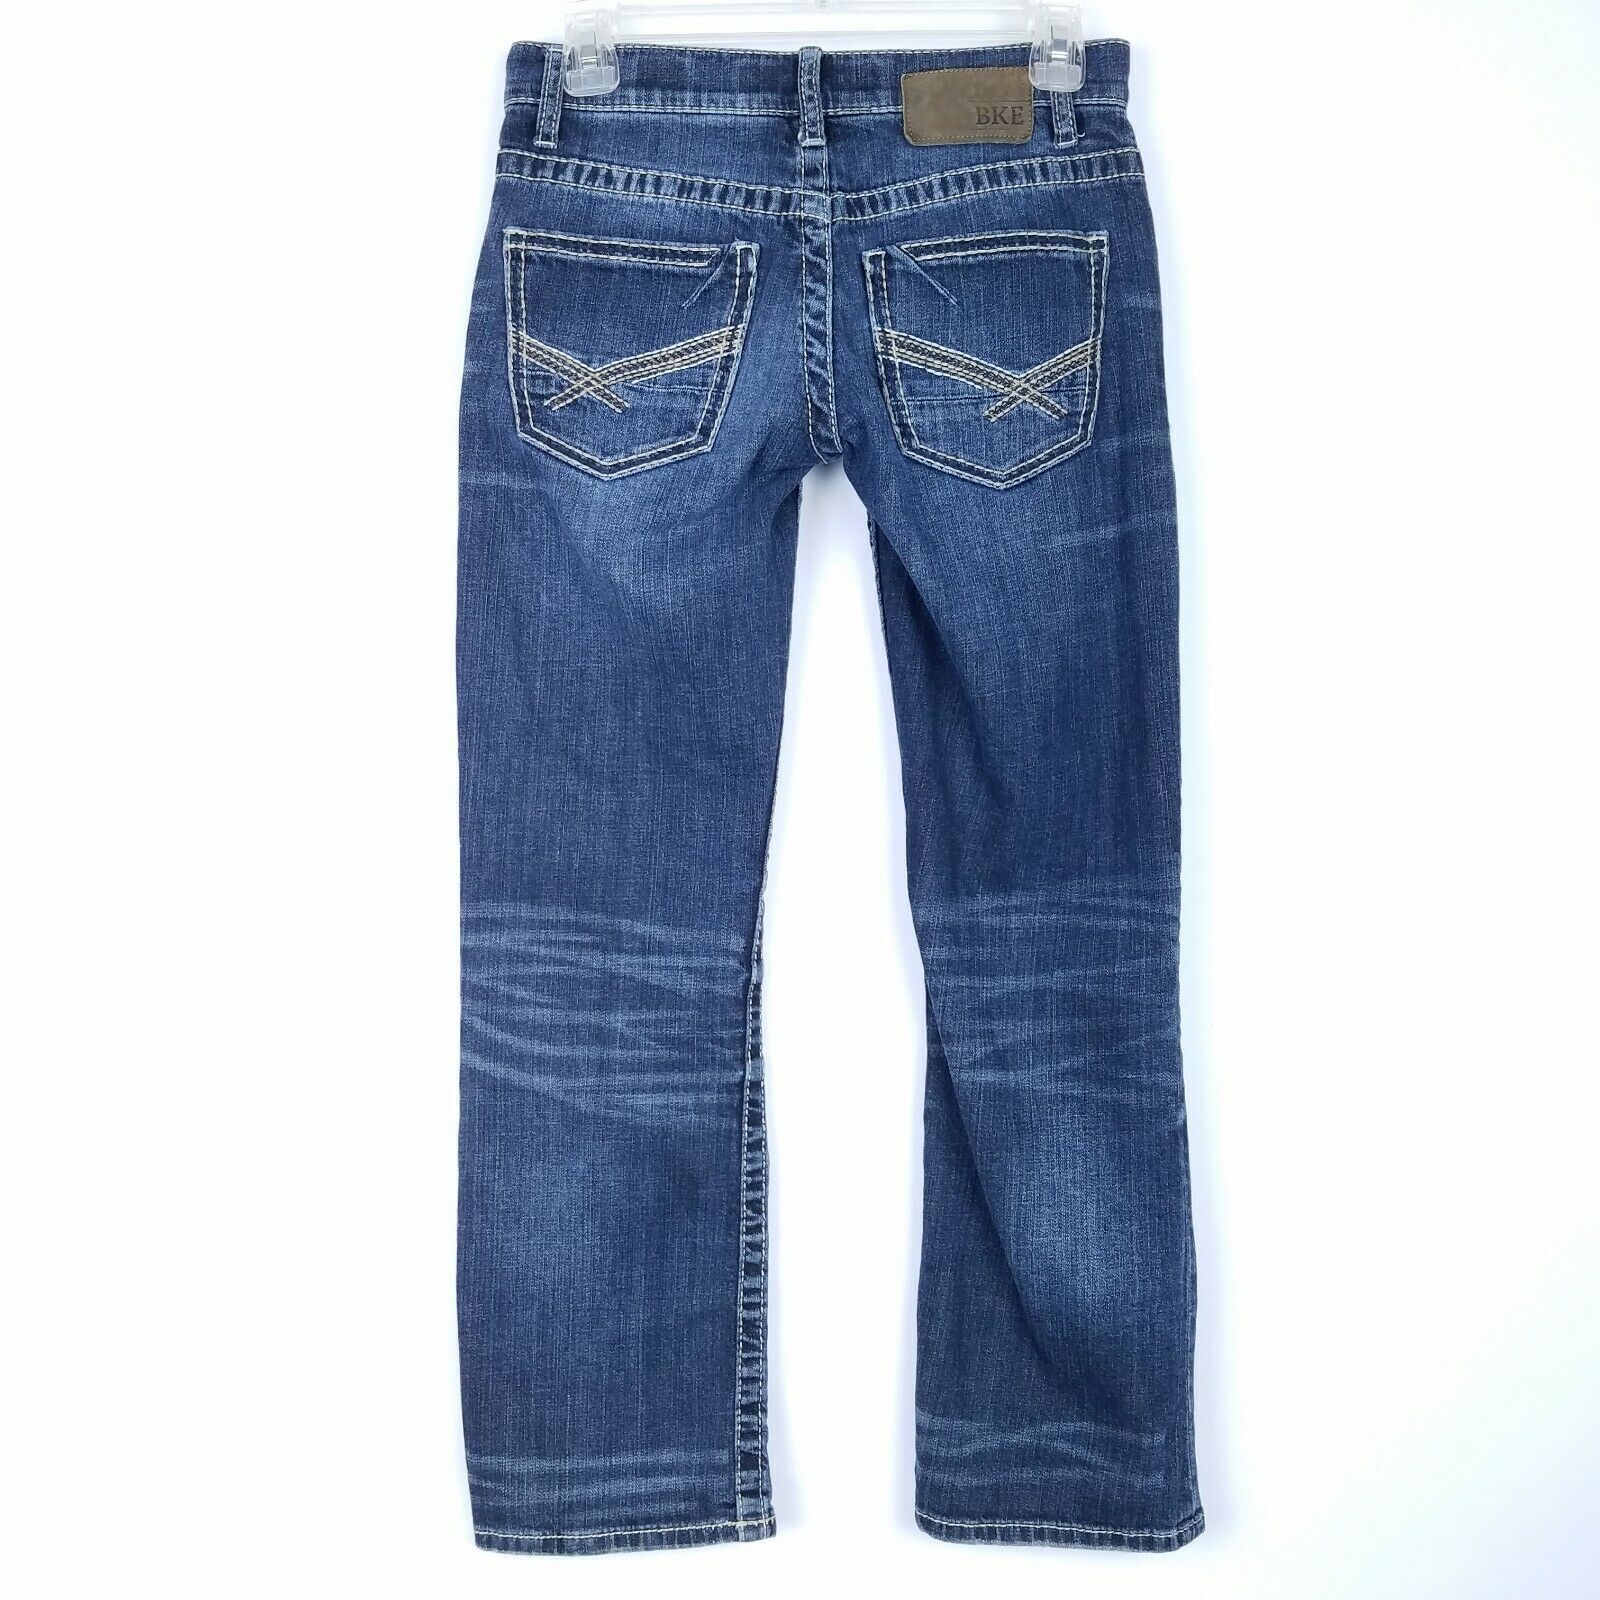 THE BUCKLE BKE Jeans Women's size 26S Aiden Boot Leg Cut Dark Blue ...